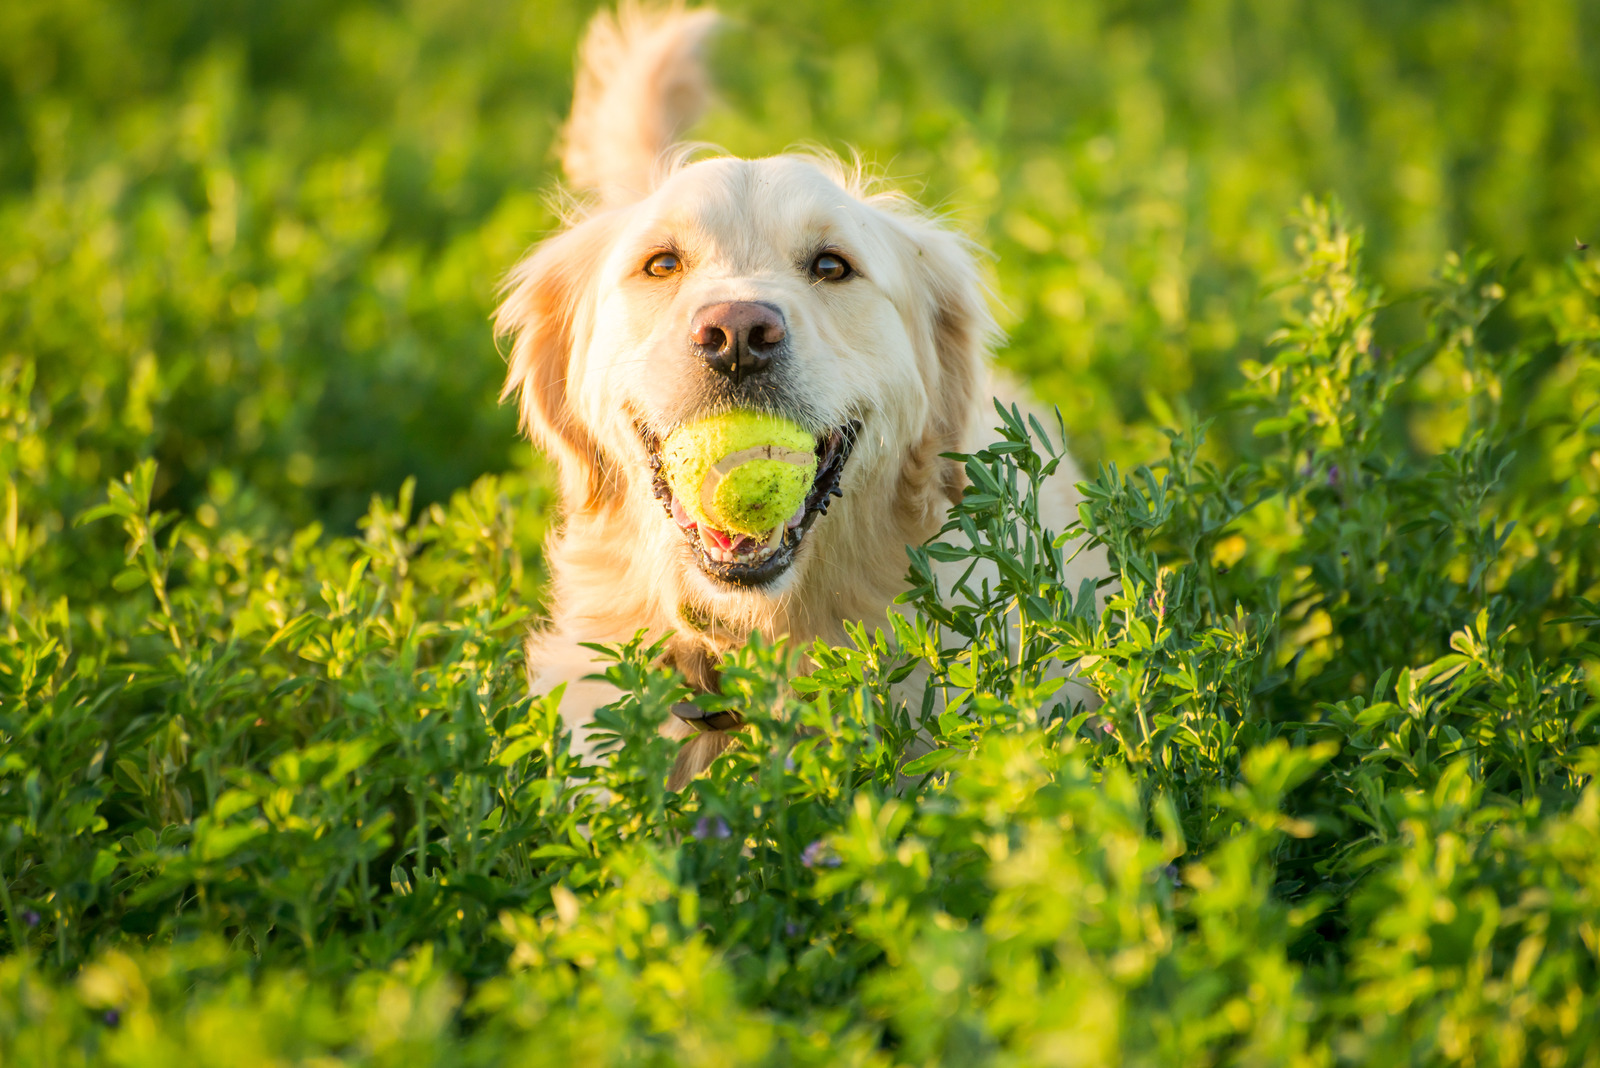 Speels hondenras golden retriever loopt door bloemenveld met gele tennisbal in mond